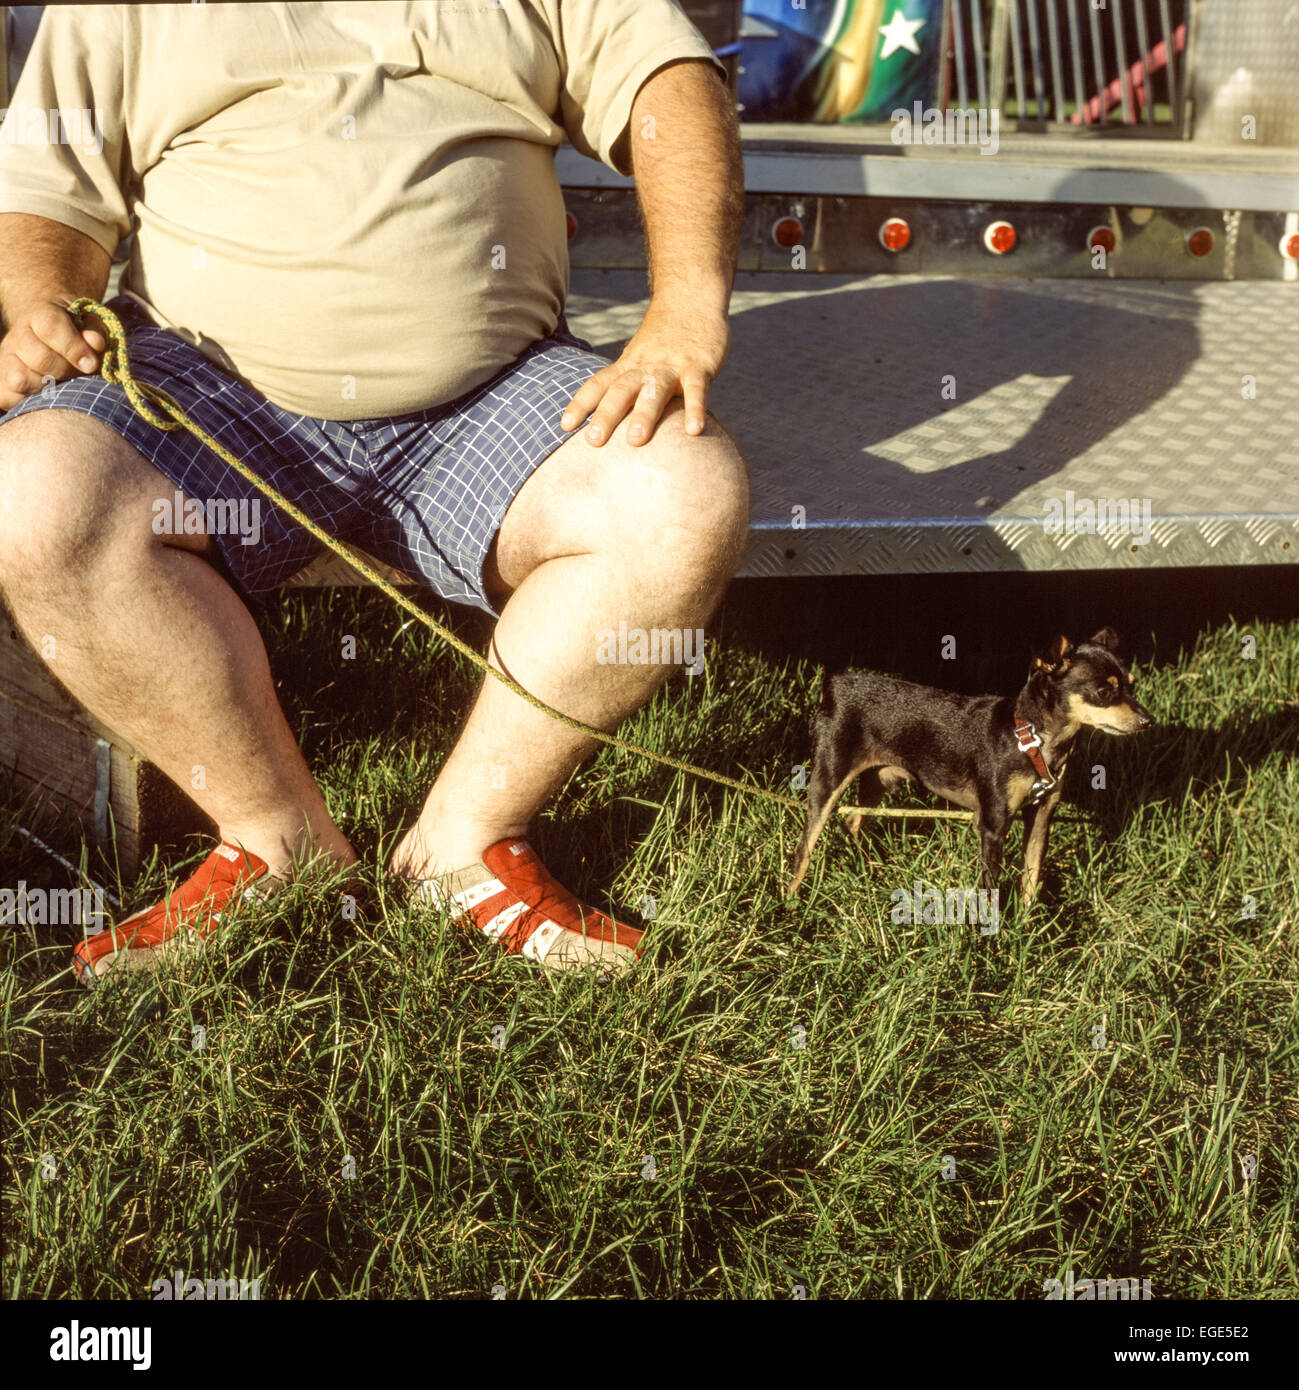 Man with a dog, Prague Ratter pet dog and man Stock Photo